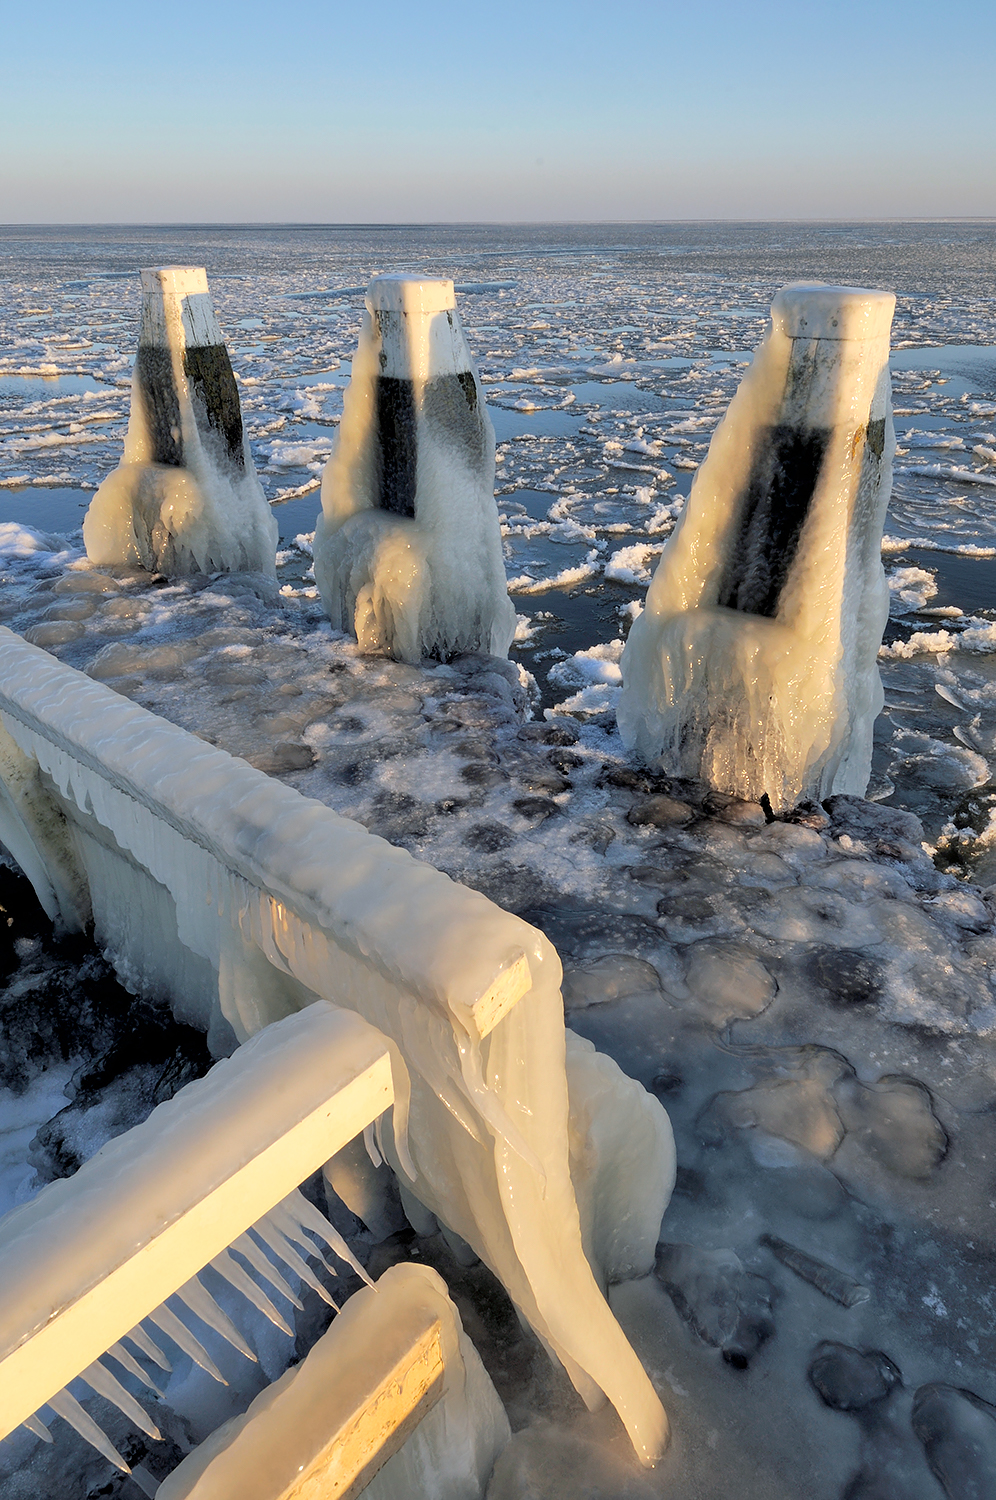 IJspegels hangen aan het hekwerk van een steiger met uitzicht op drijvende ijsschotsen tijdens winter op het IJsselmeer.